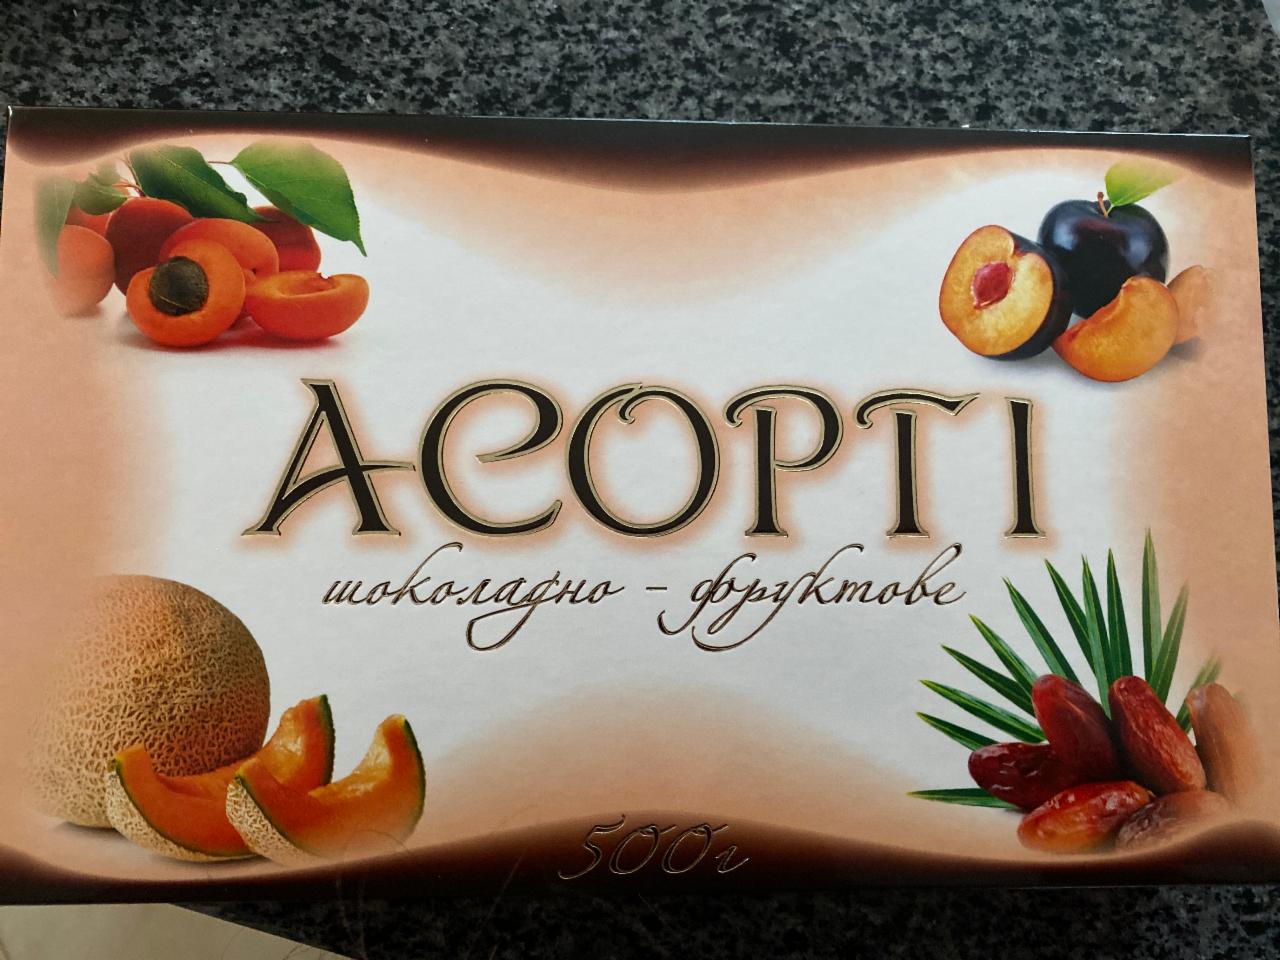 Фото - Цукерка Асорті шоколадно-фруктове Пінчук